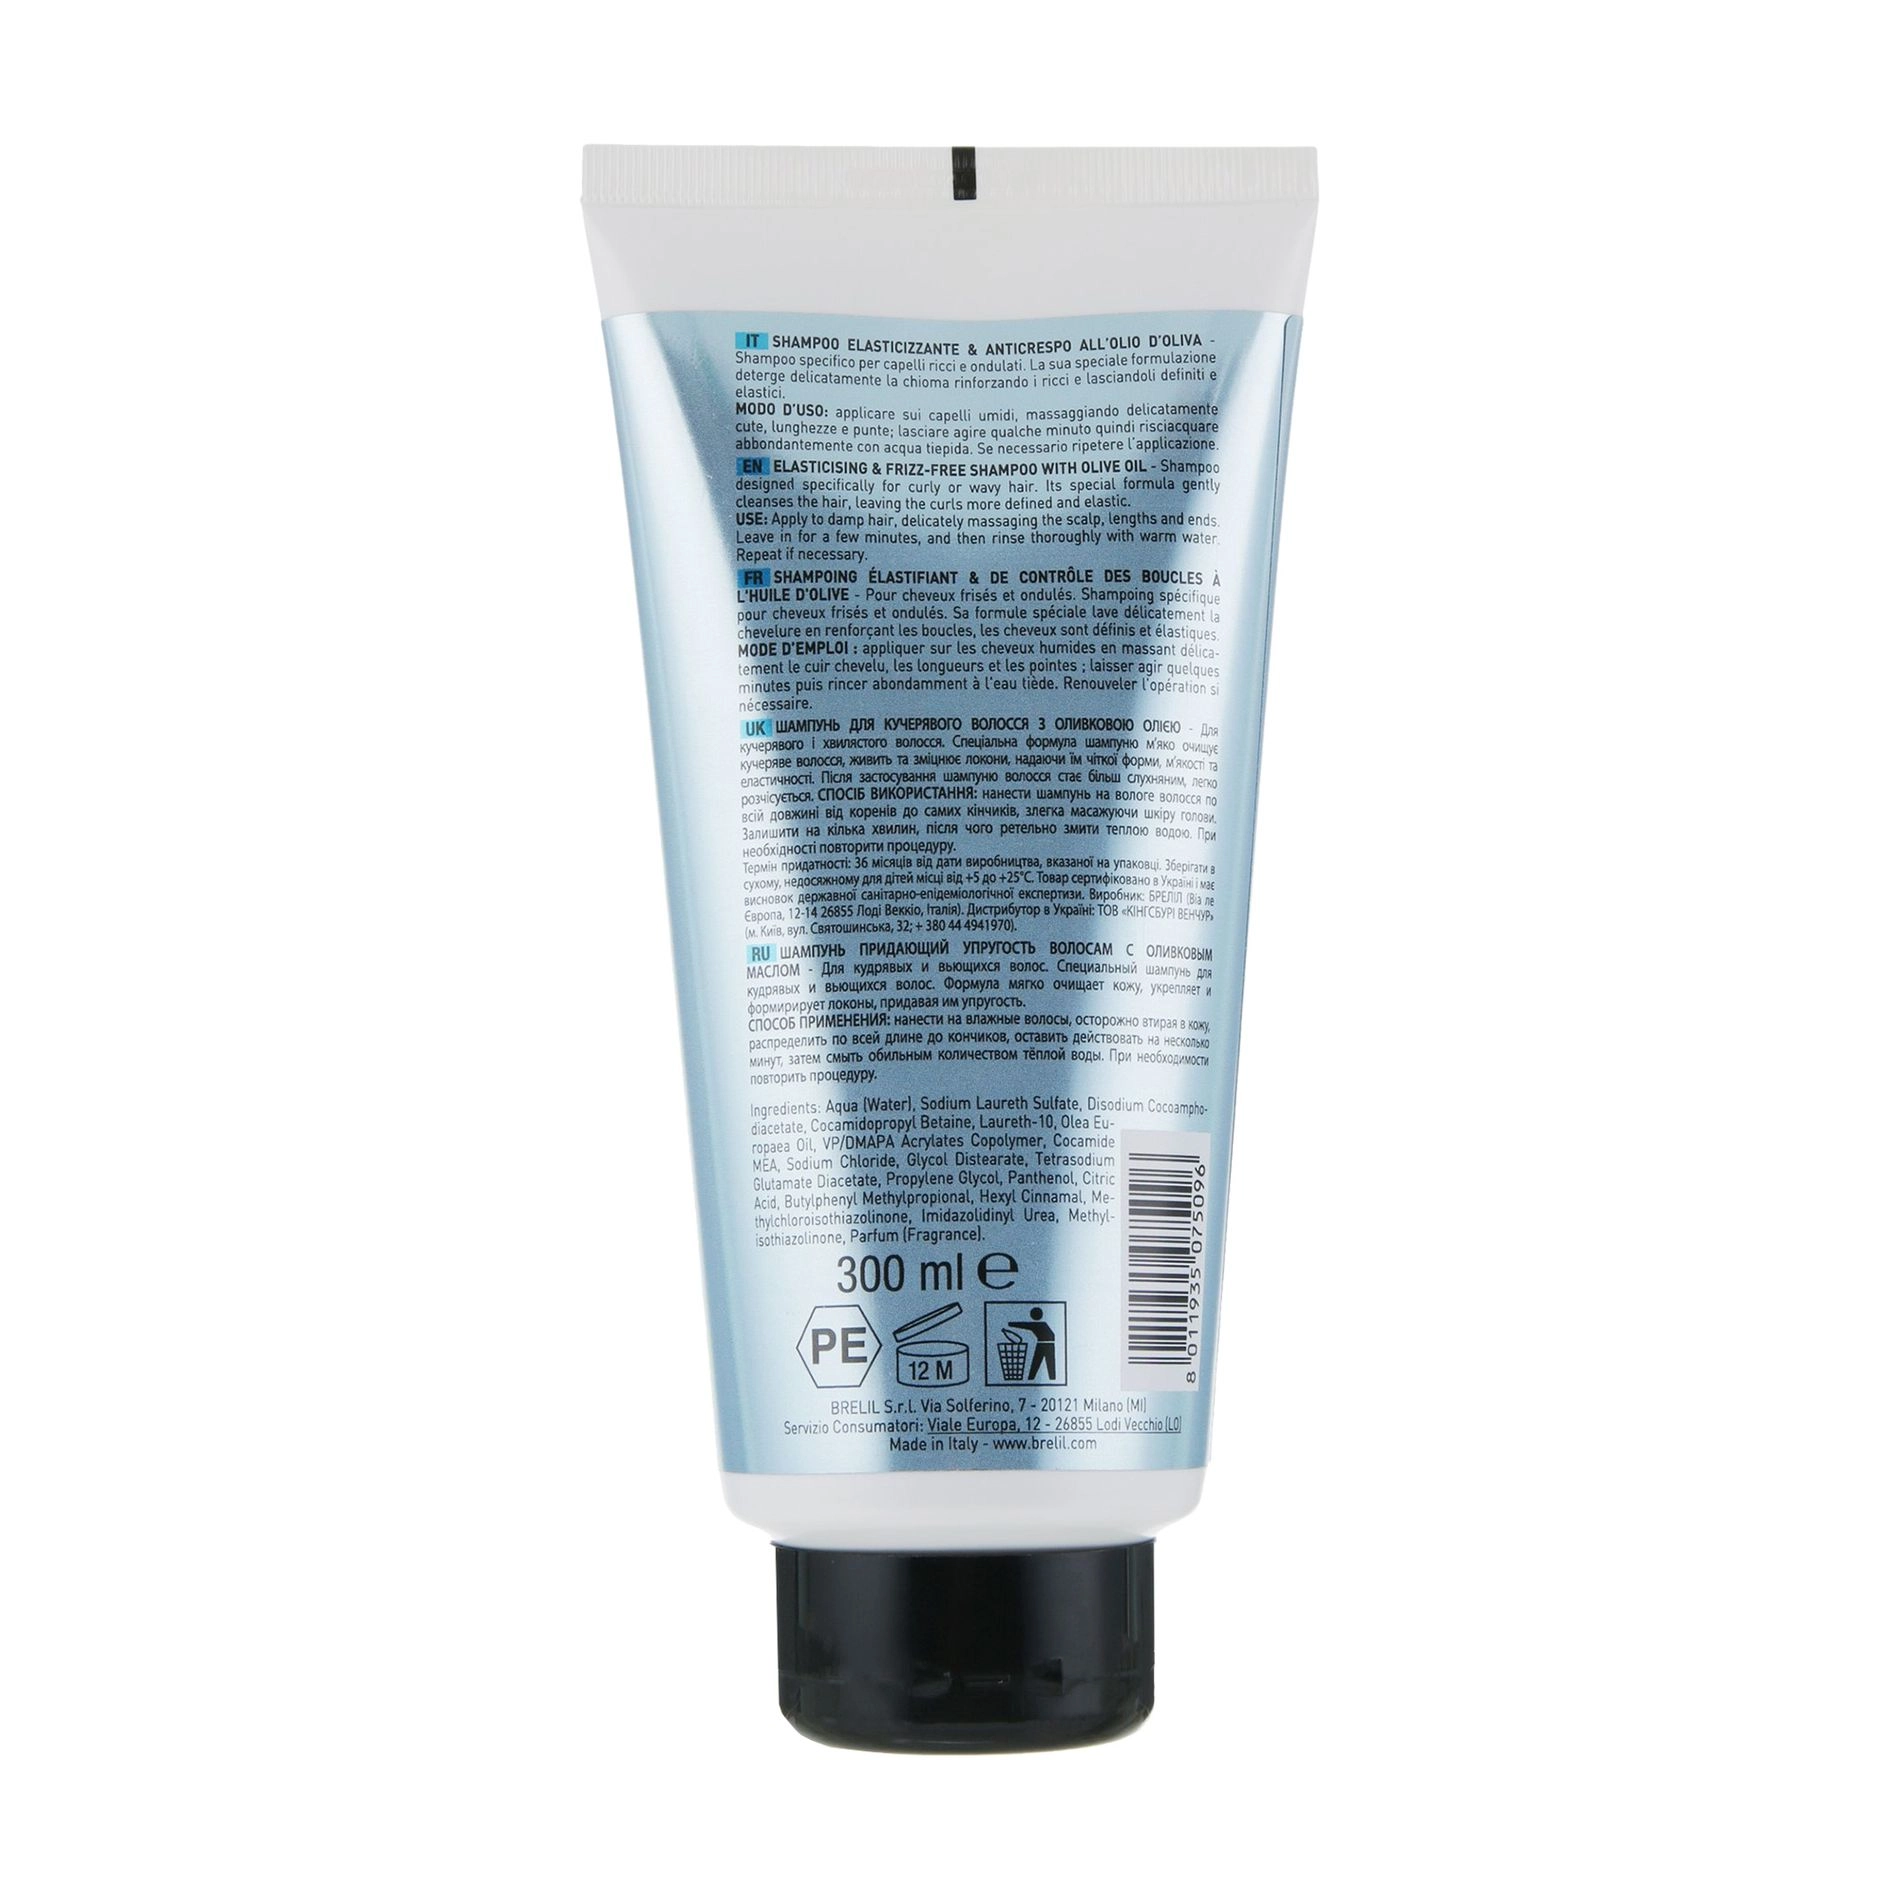 Brelil Шампунь Numero Elasticizing & Frizz-Free Shampoo з оливковою олією, для кучерявого волосся - фото N2